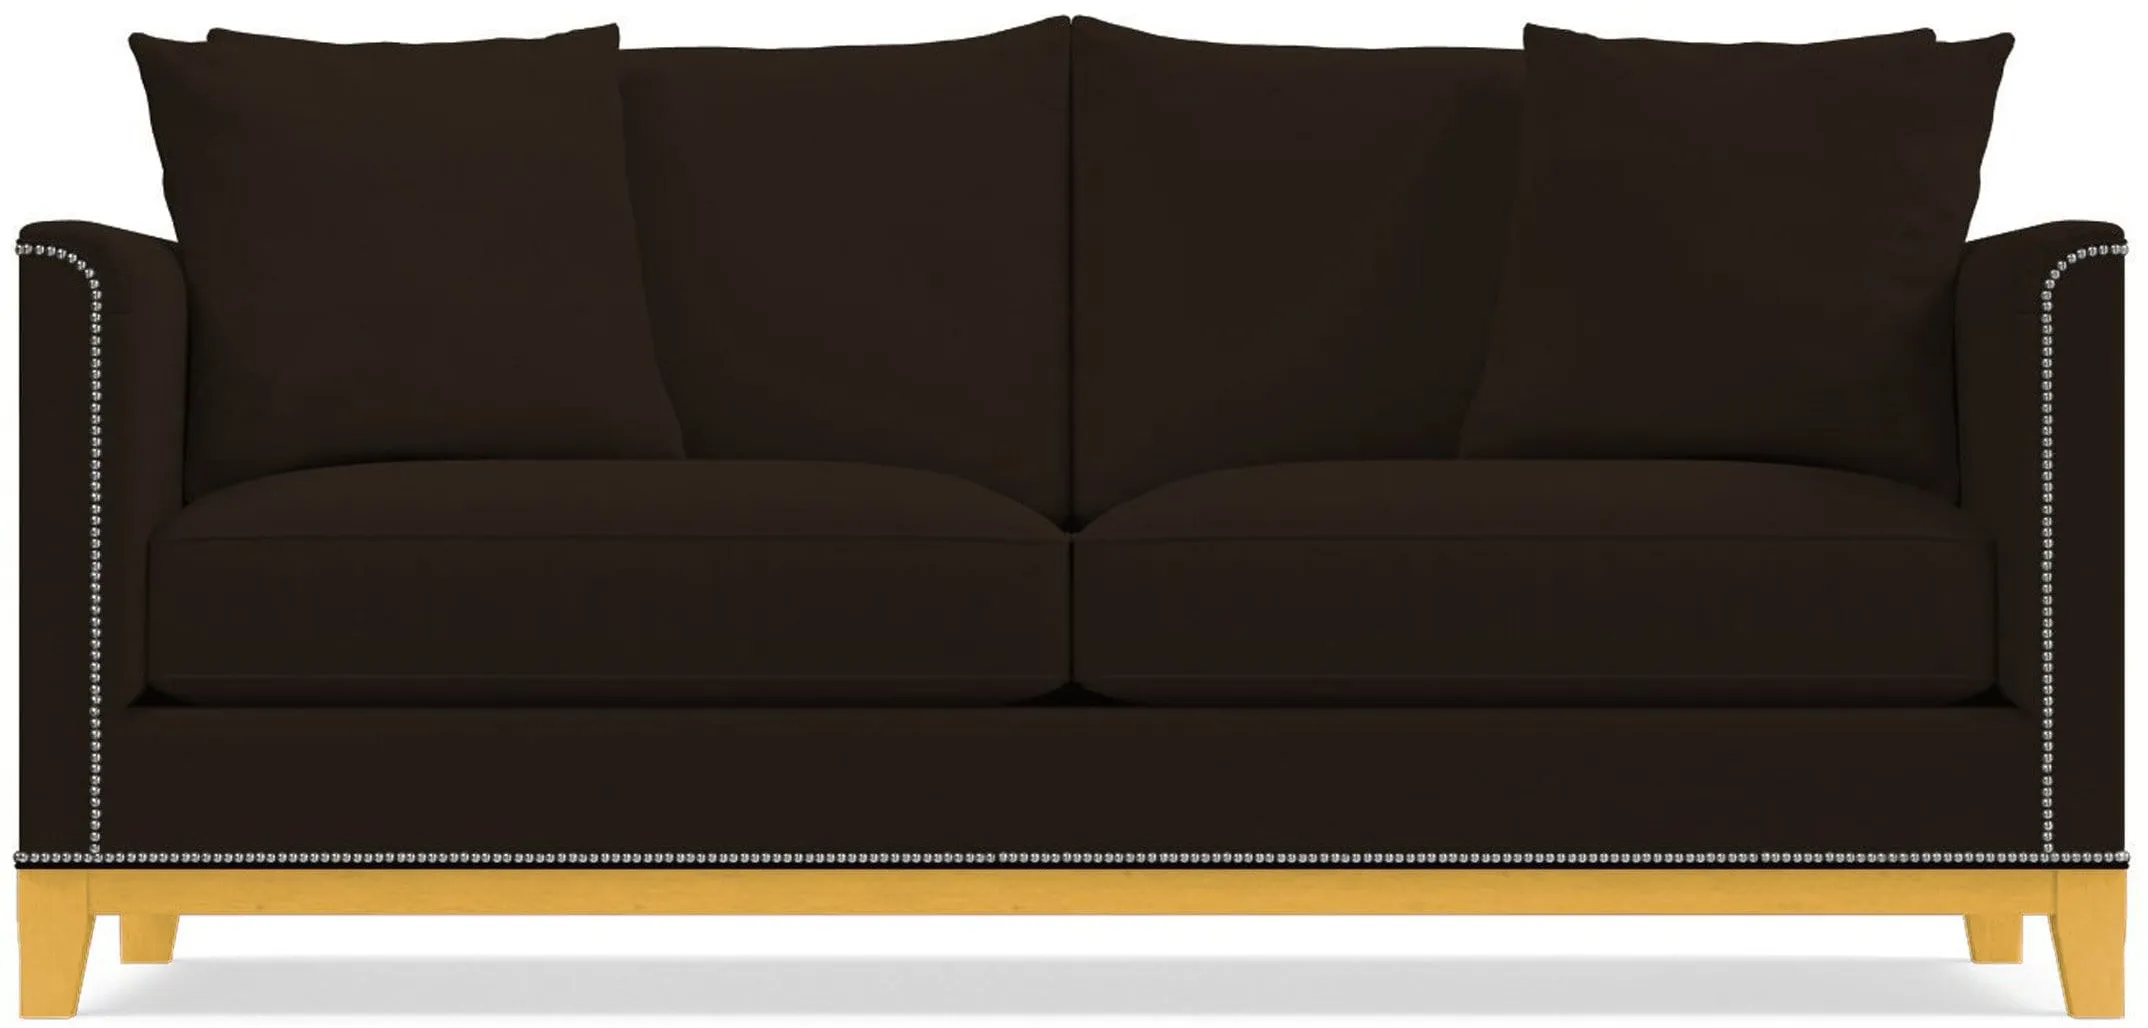 La Brea Sofa